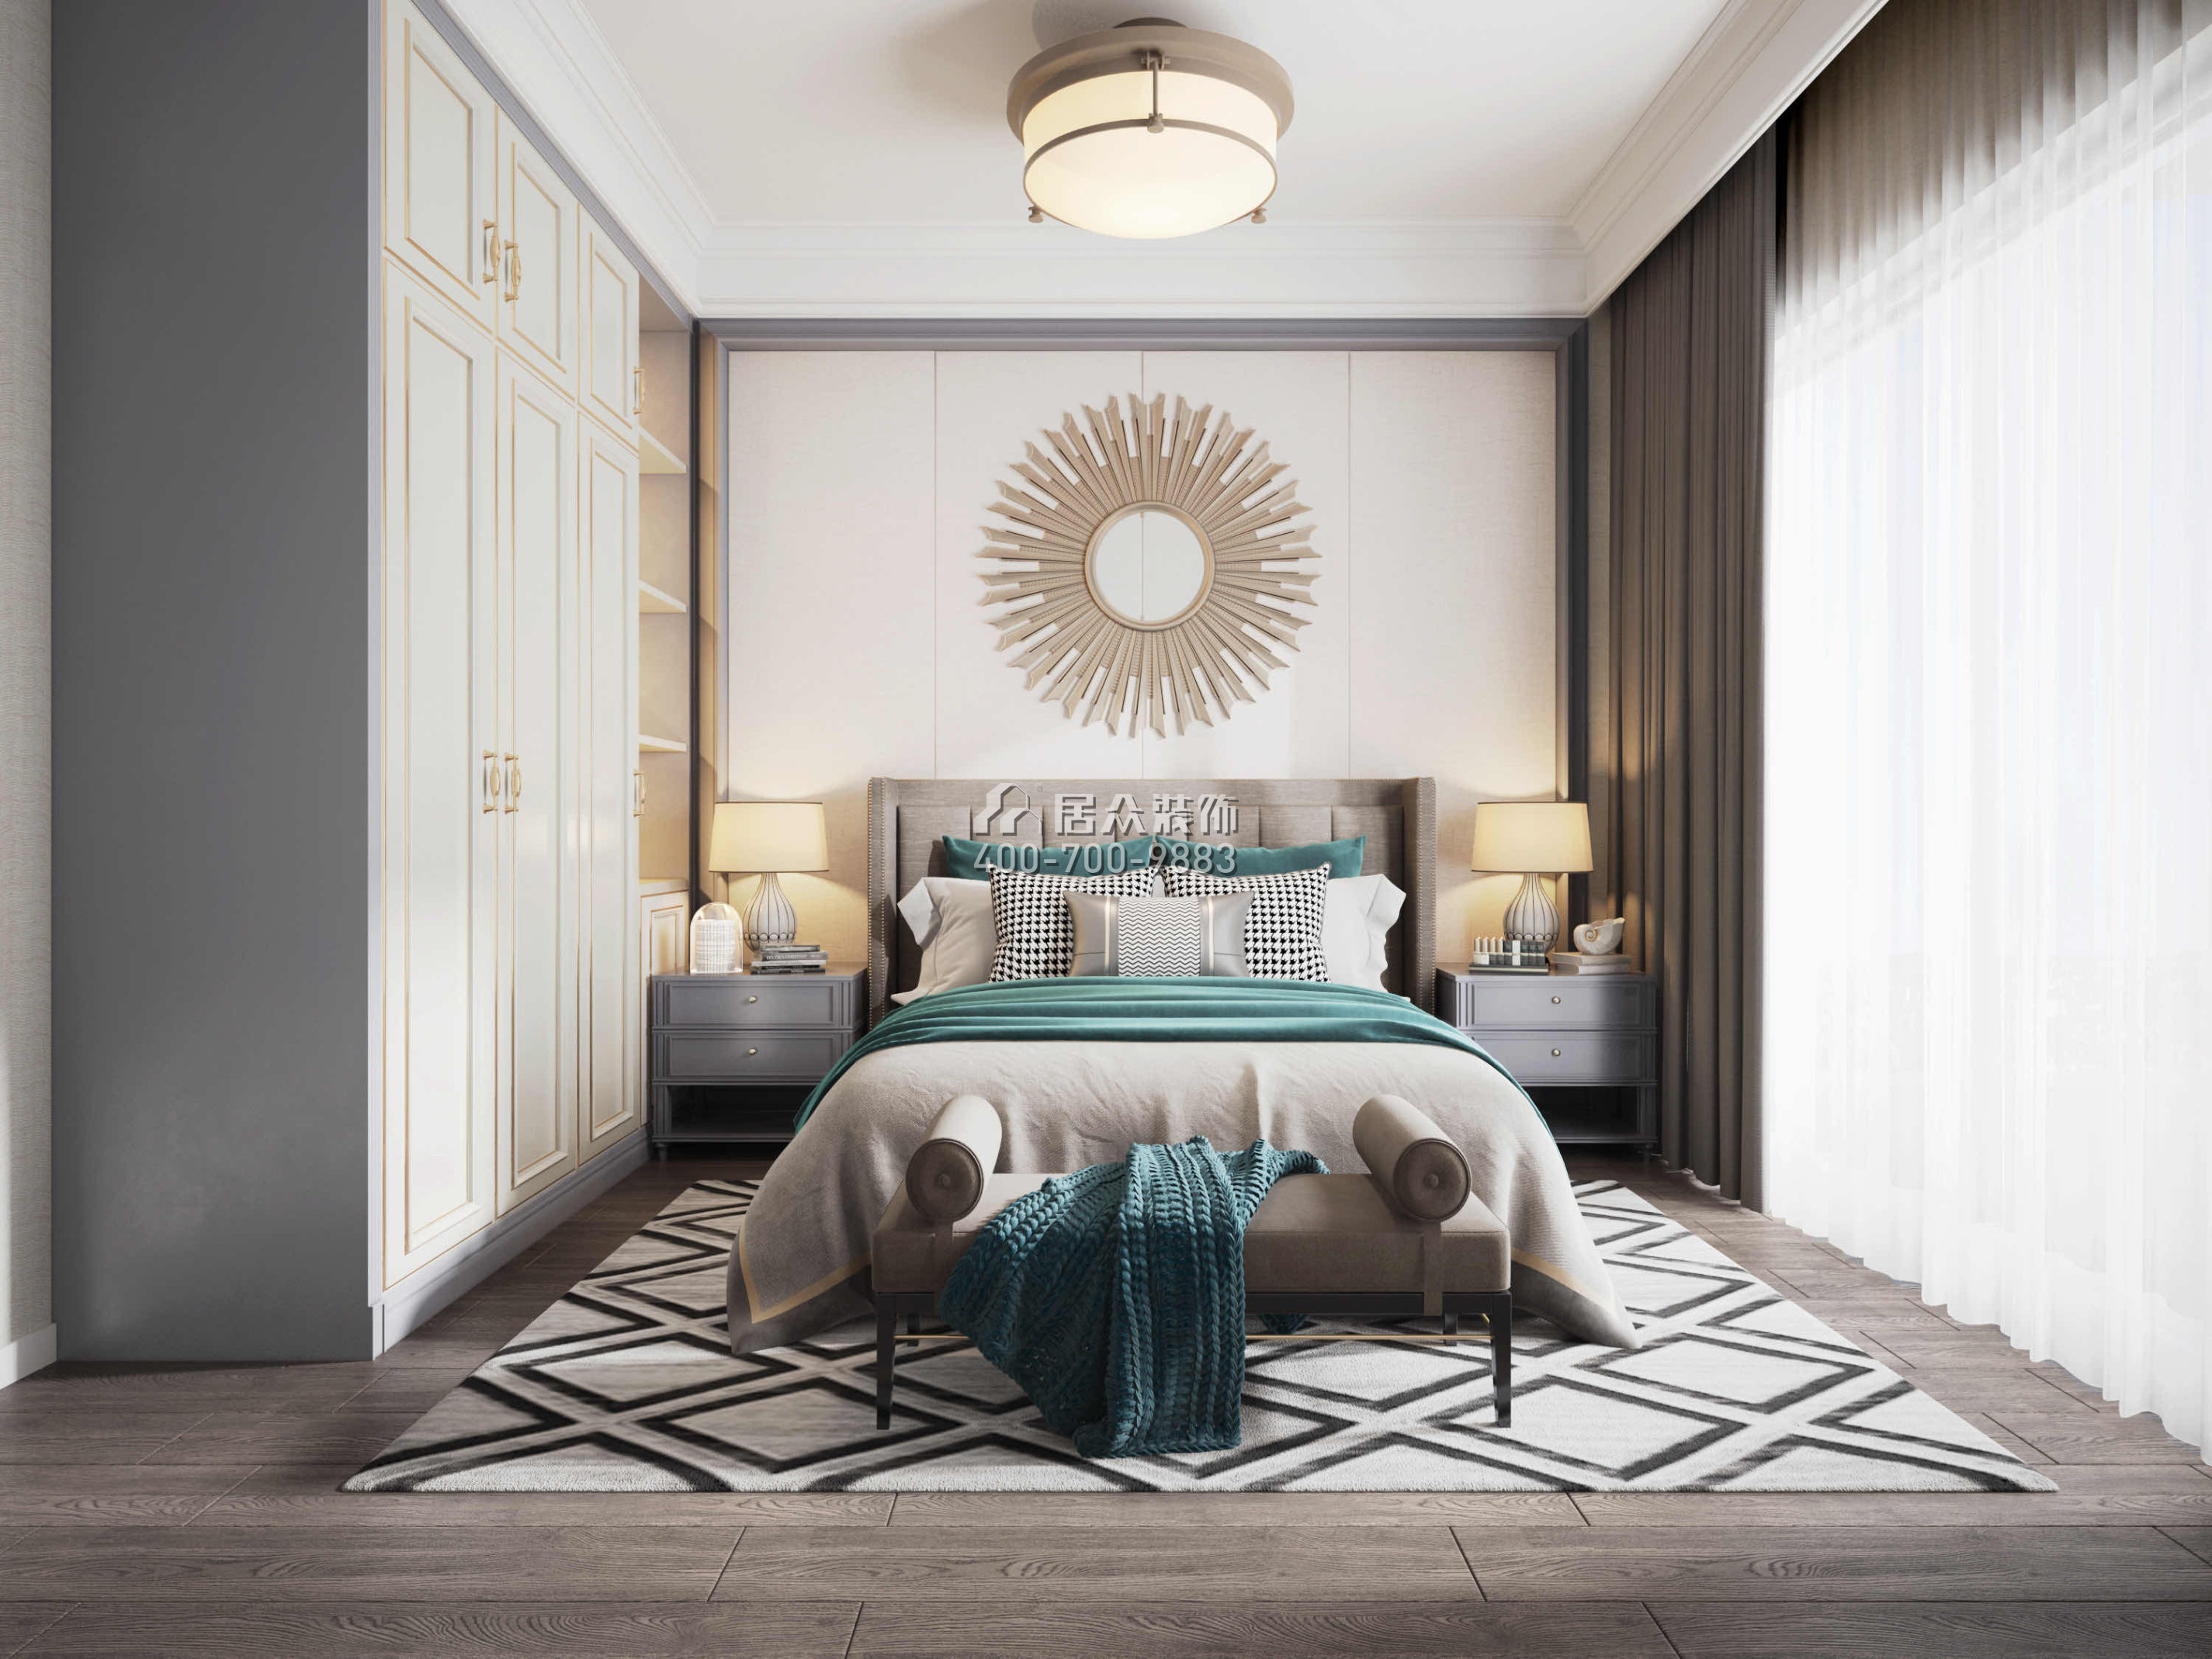 萬科金域藍灣98平方米美式風格平層戶型臥室裝修效果圖